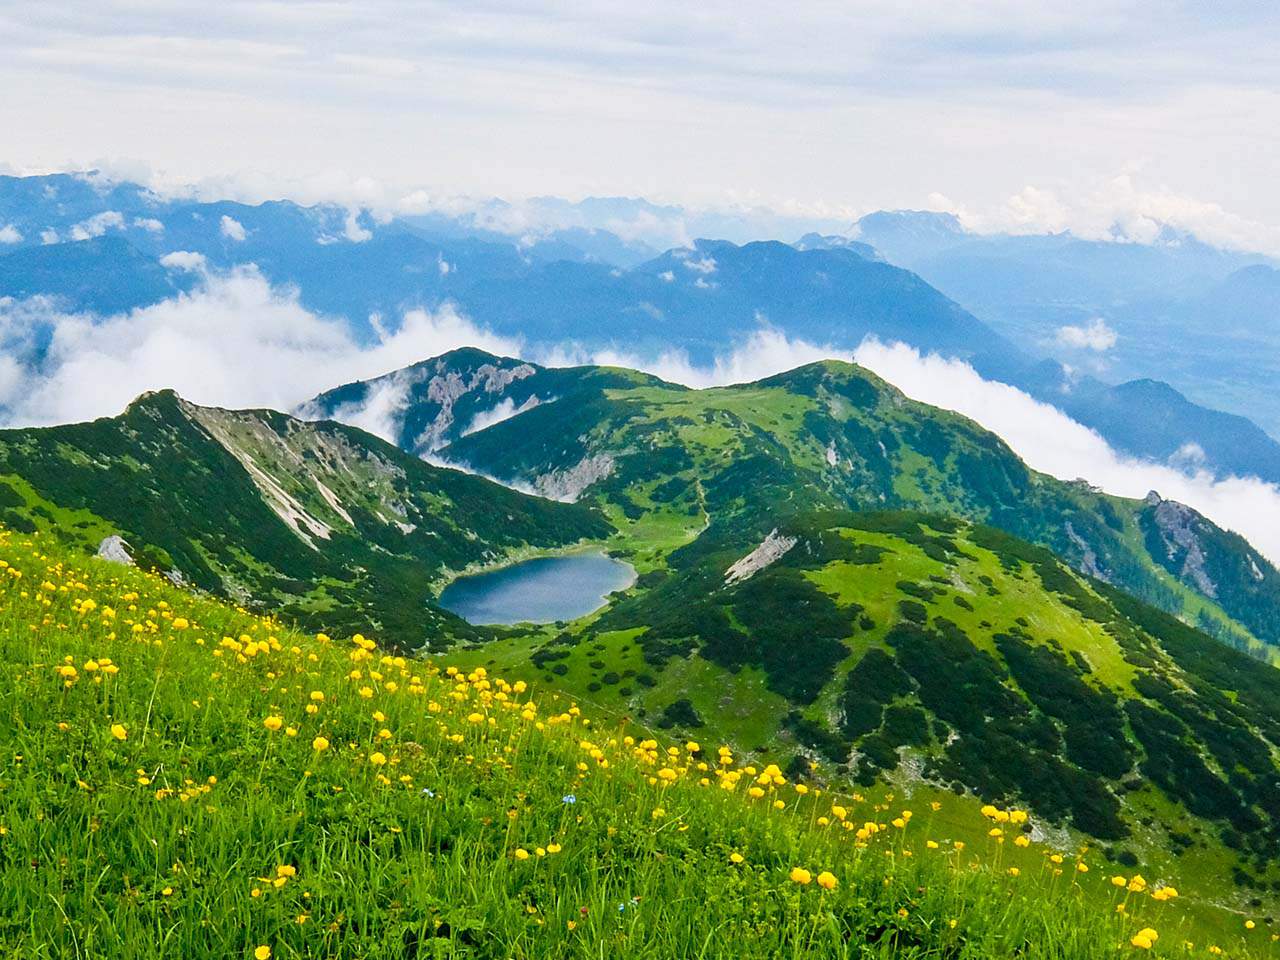 Brandenberg Alps, Tyrol - Lake and Mountains